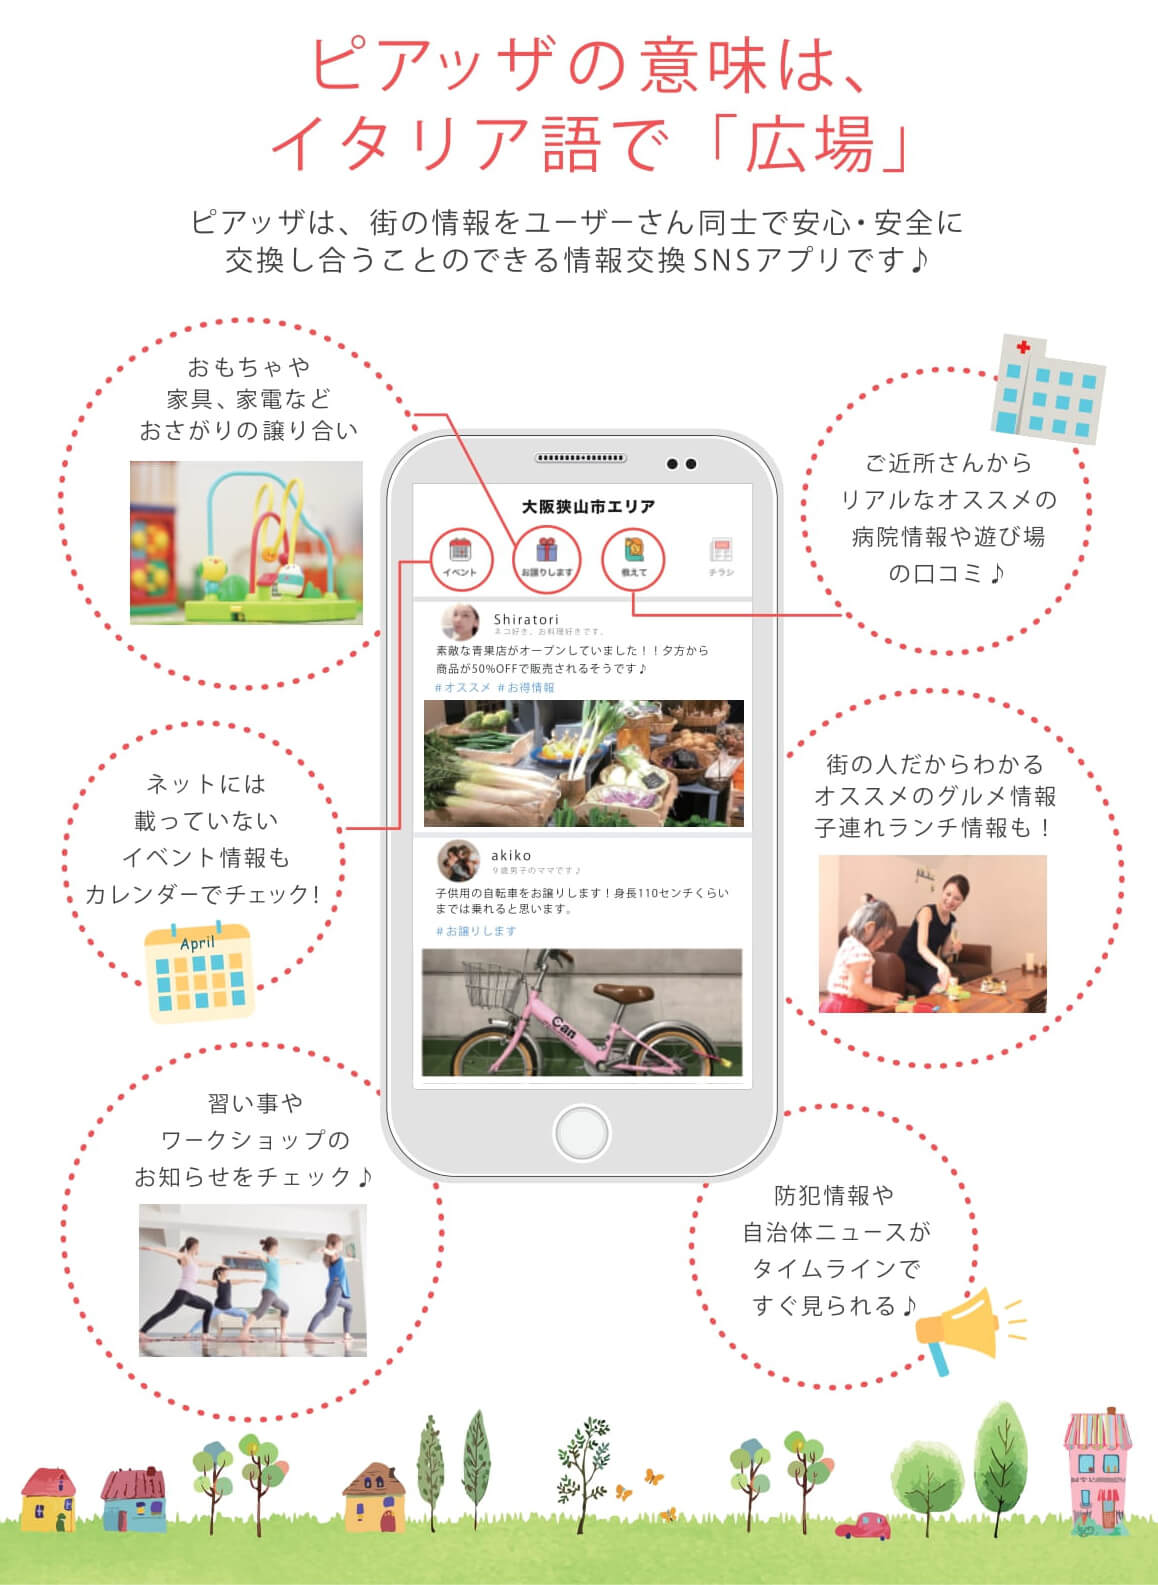 地域SNSアプリ「ピアッザ」で、大阪狭山市・河内長野市・富田林市エリアが開設されました (3)